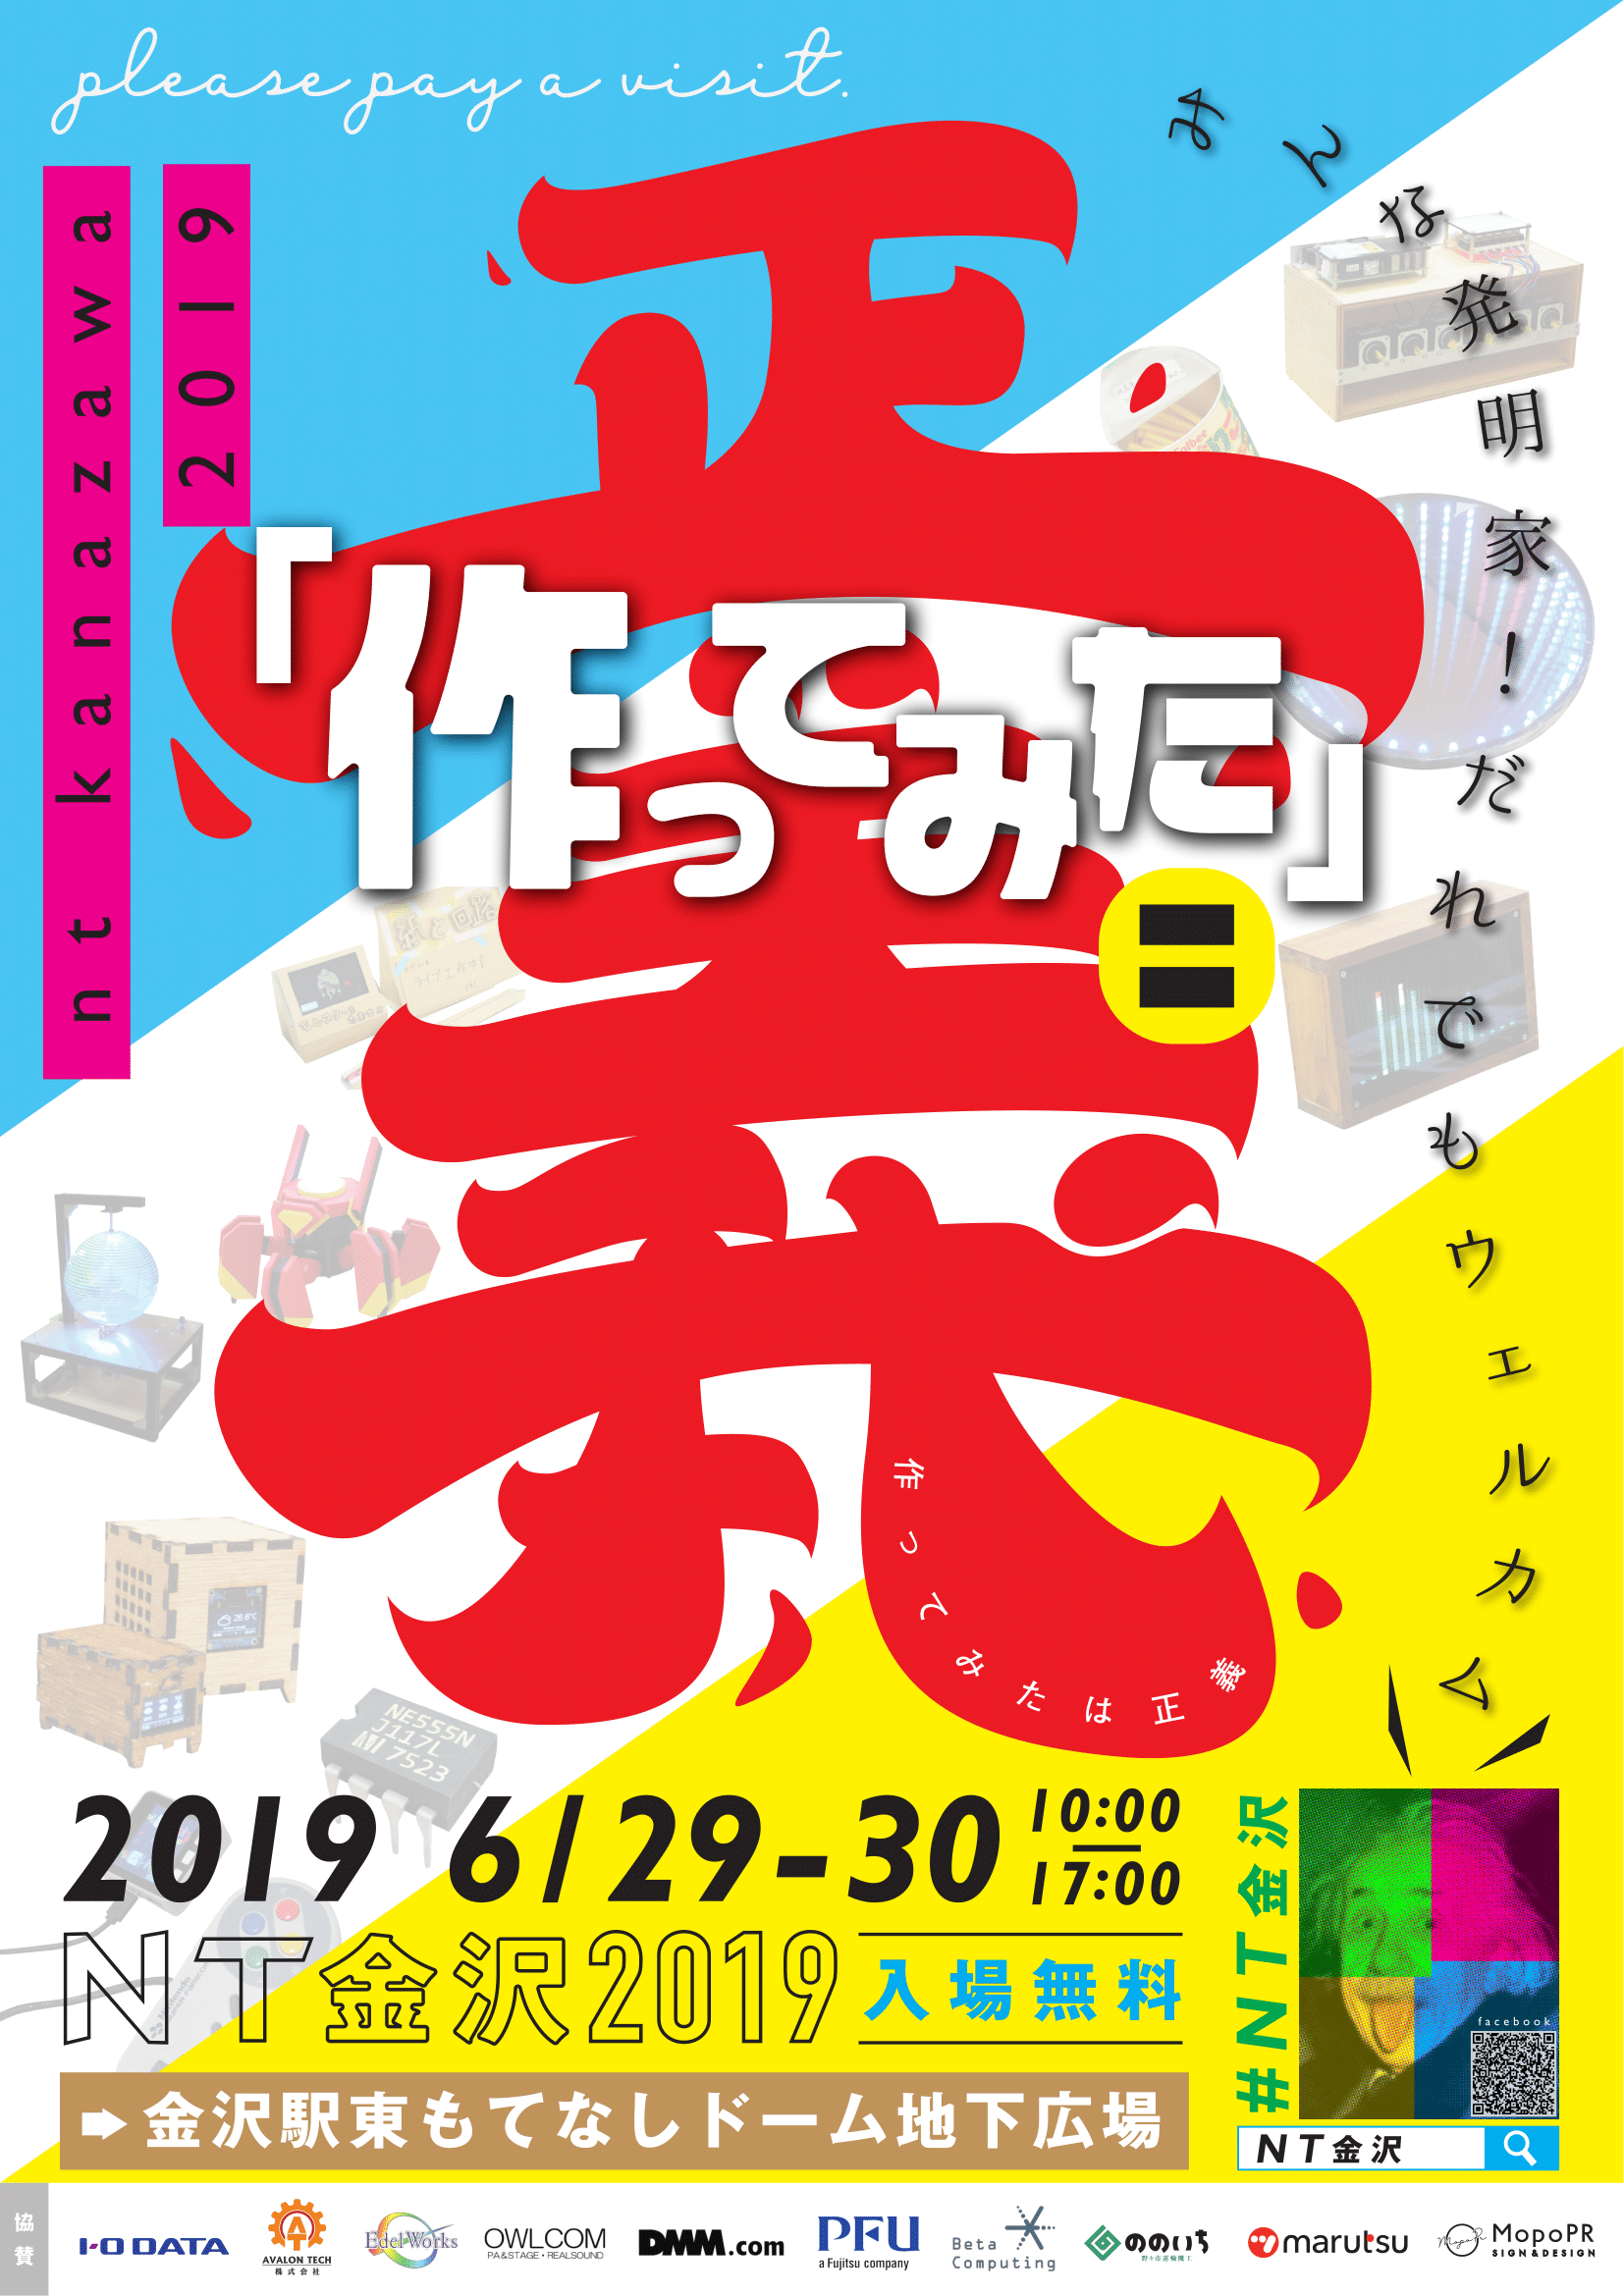 ntkanazawa2019_poster1.png